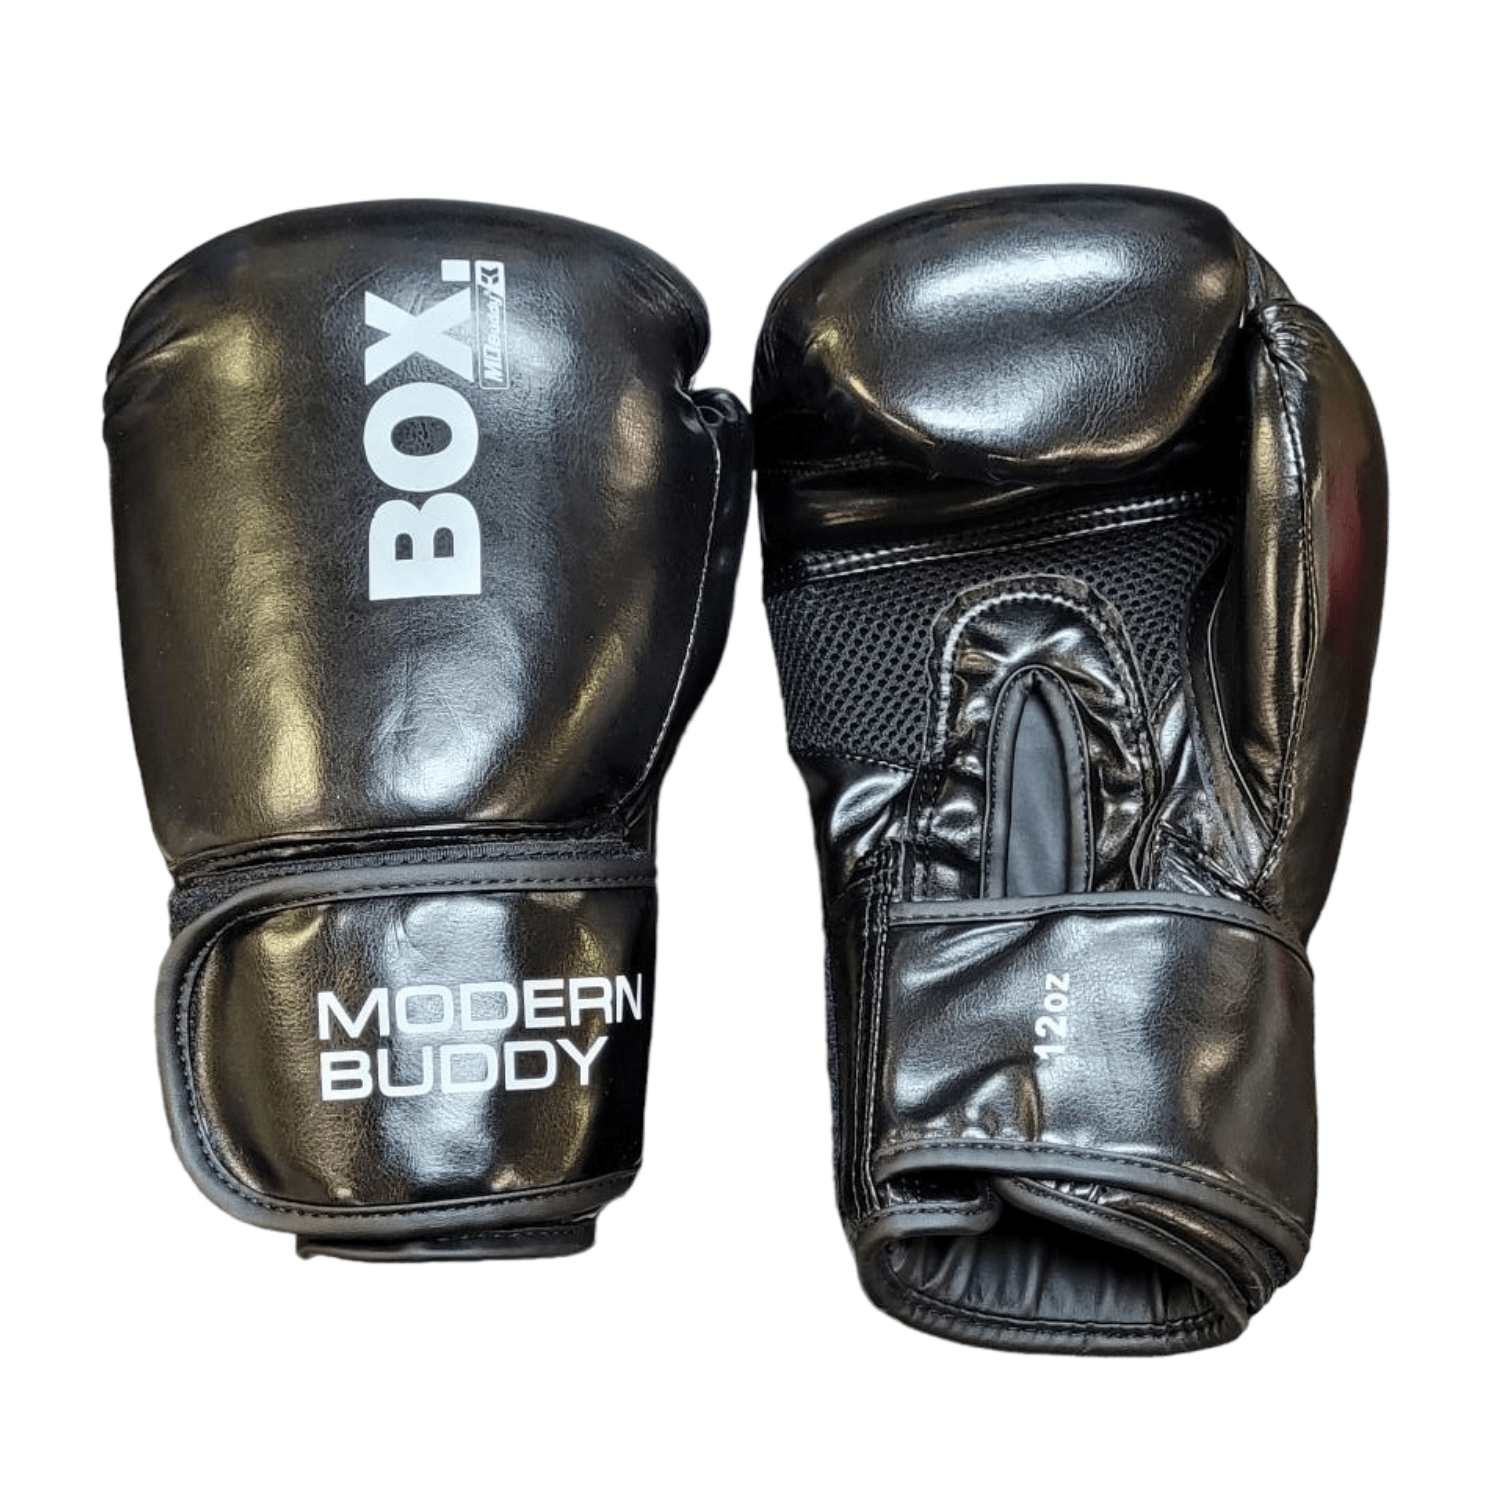 MD Buddy Boxing Gloves-Boxing Gloves-MD Buddy-4